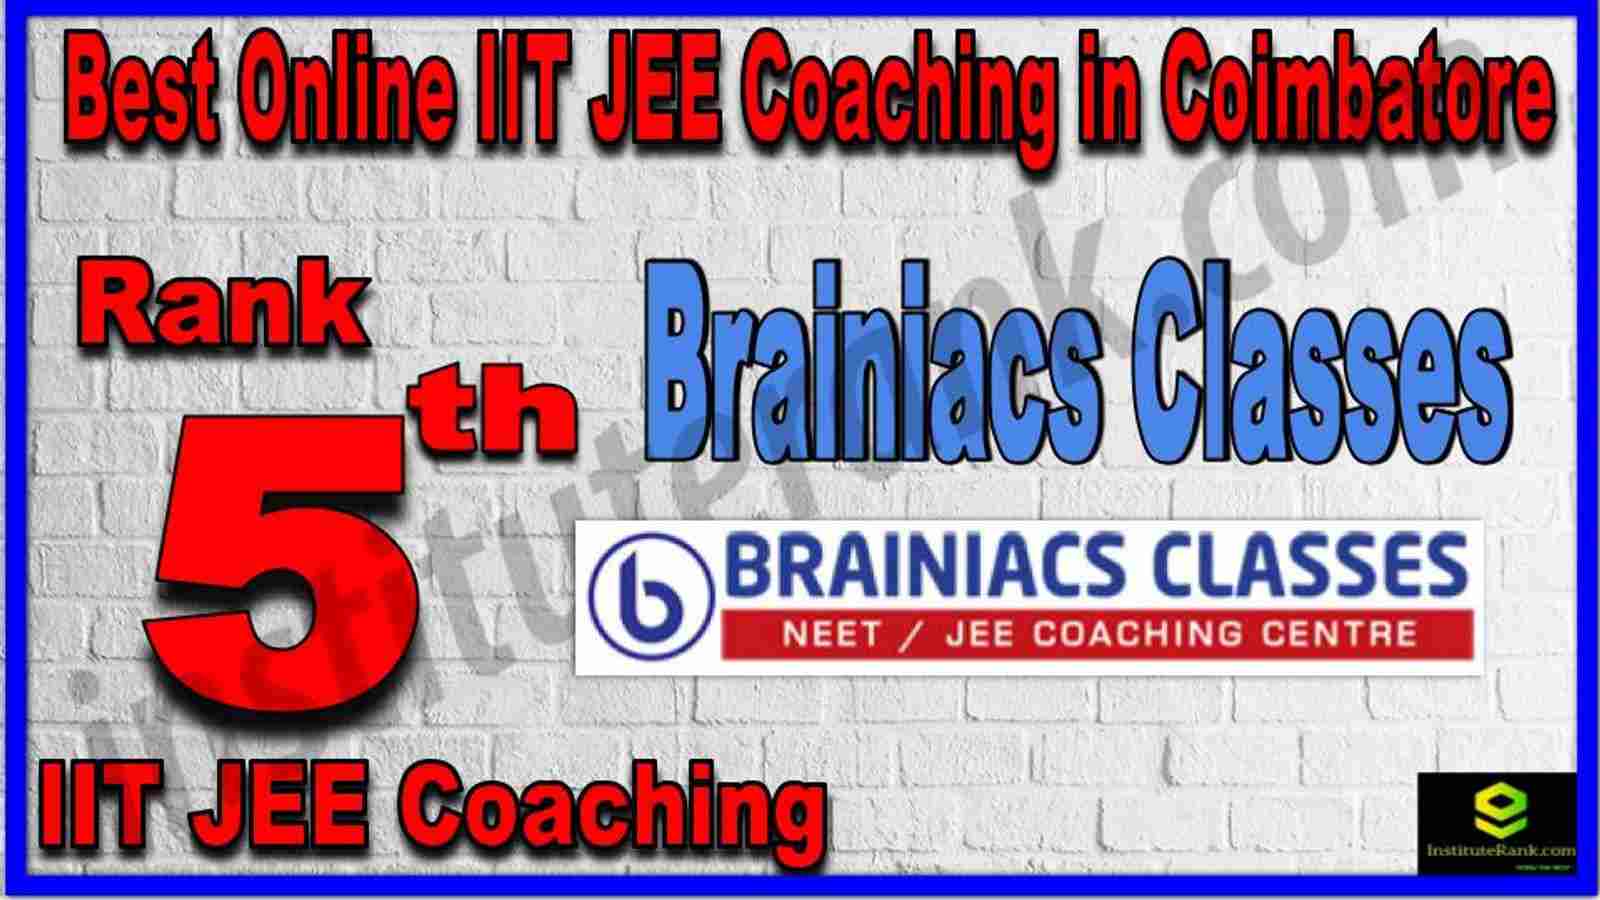 Rank 5th Best Online IIT JEE Coaching in Coimbatore